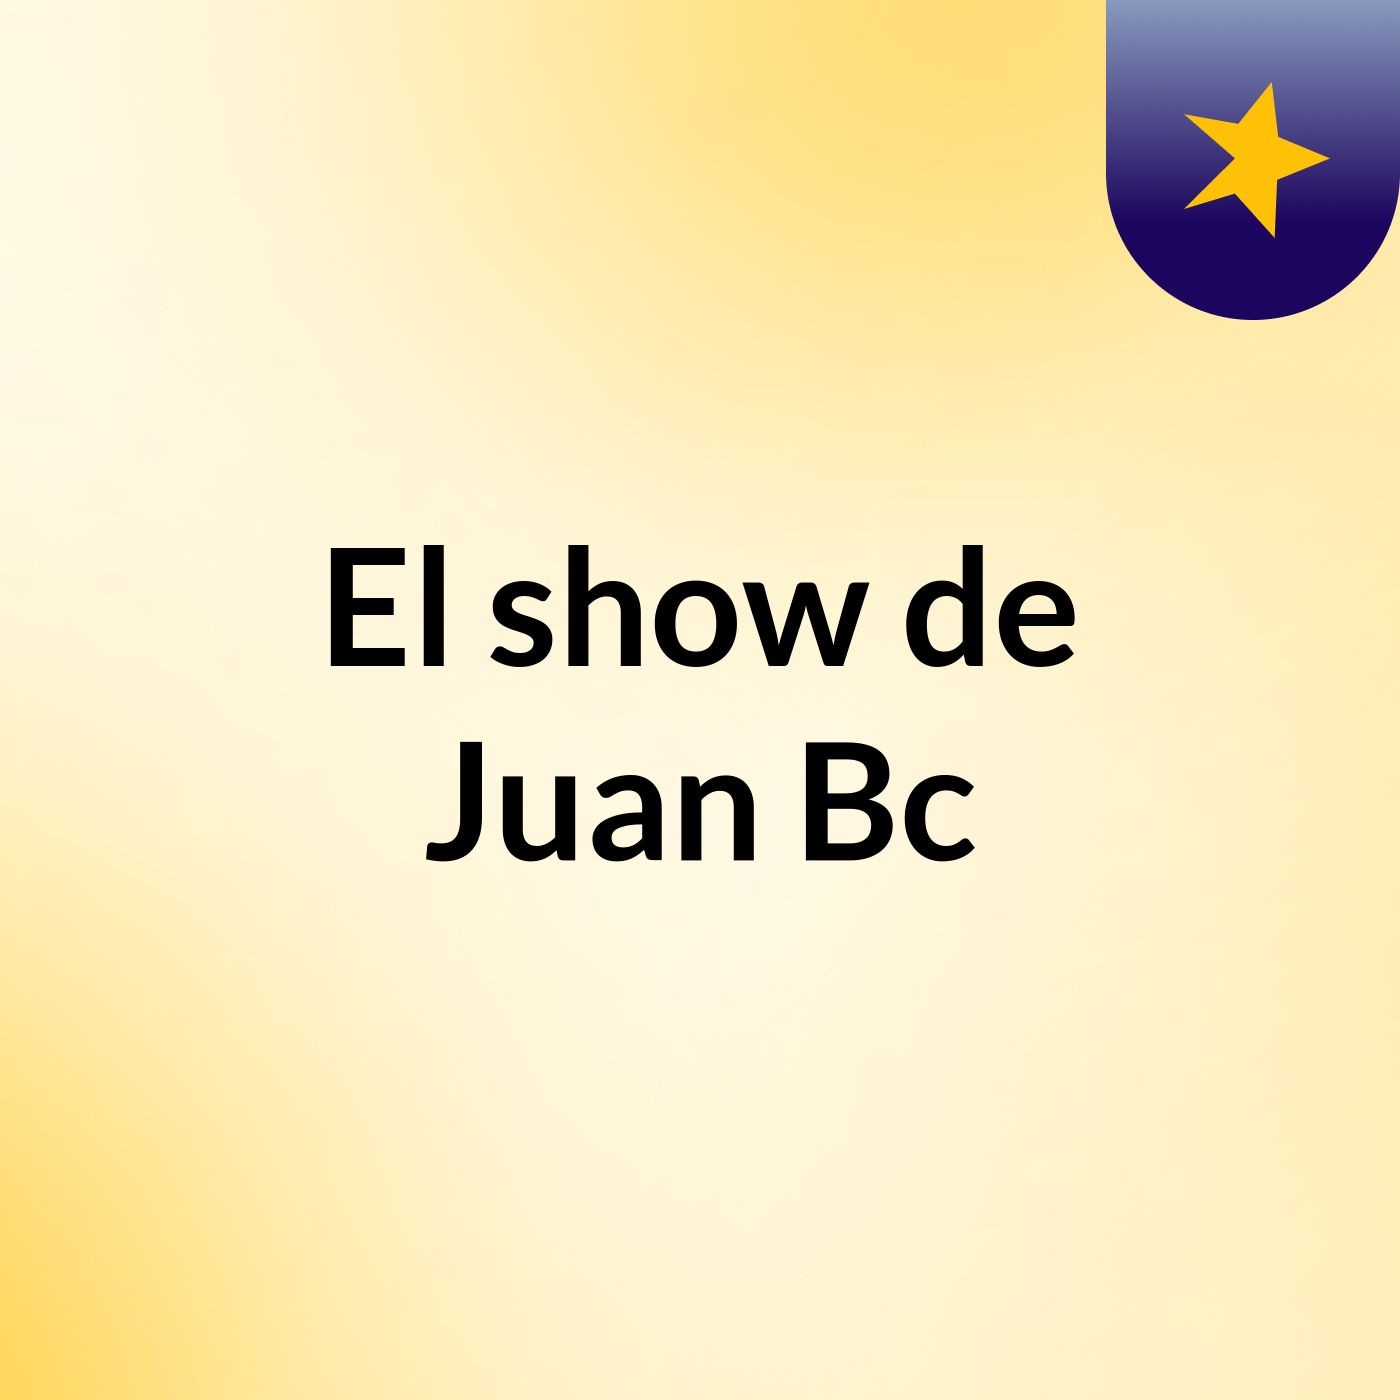 Episodio 7 - El show de Juan Bc